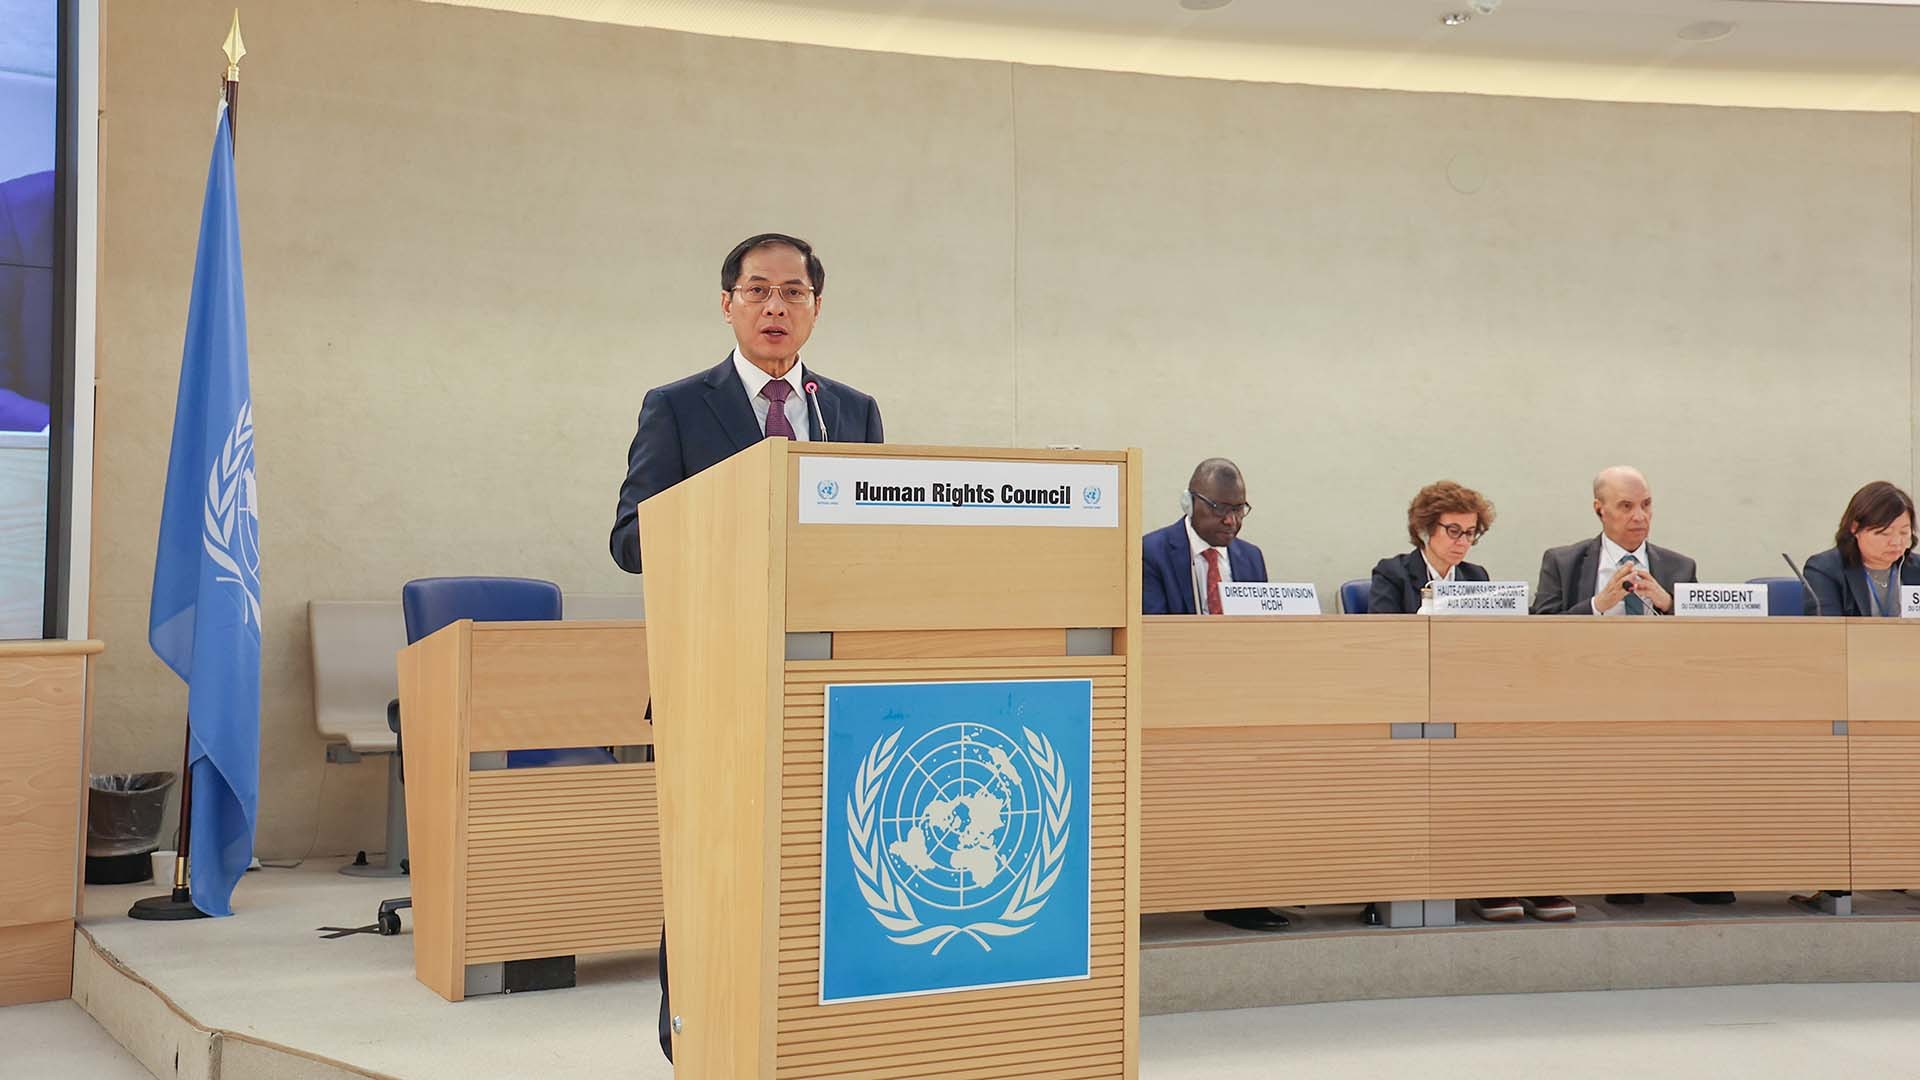 ブイ・タイン・ソン大臣は、55月26日にスイスのジュネーブで開催された第2回国連人権理事会のハイレベル会合で講演した。 (写真:ニャットフォン)